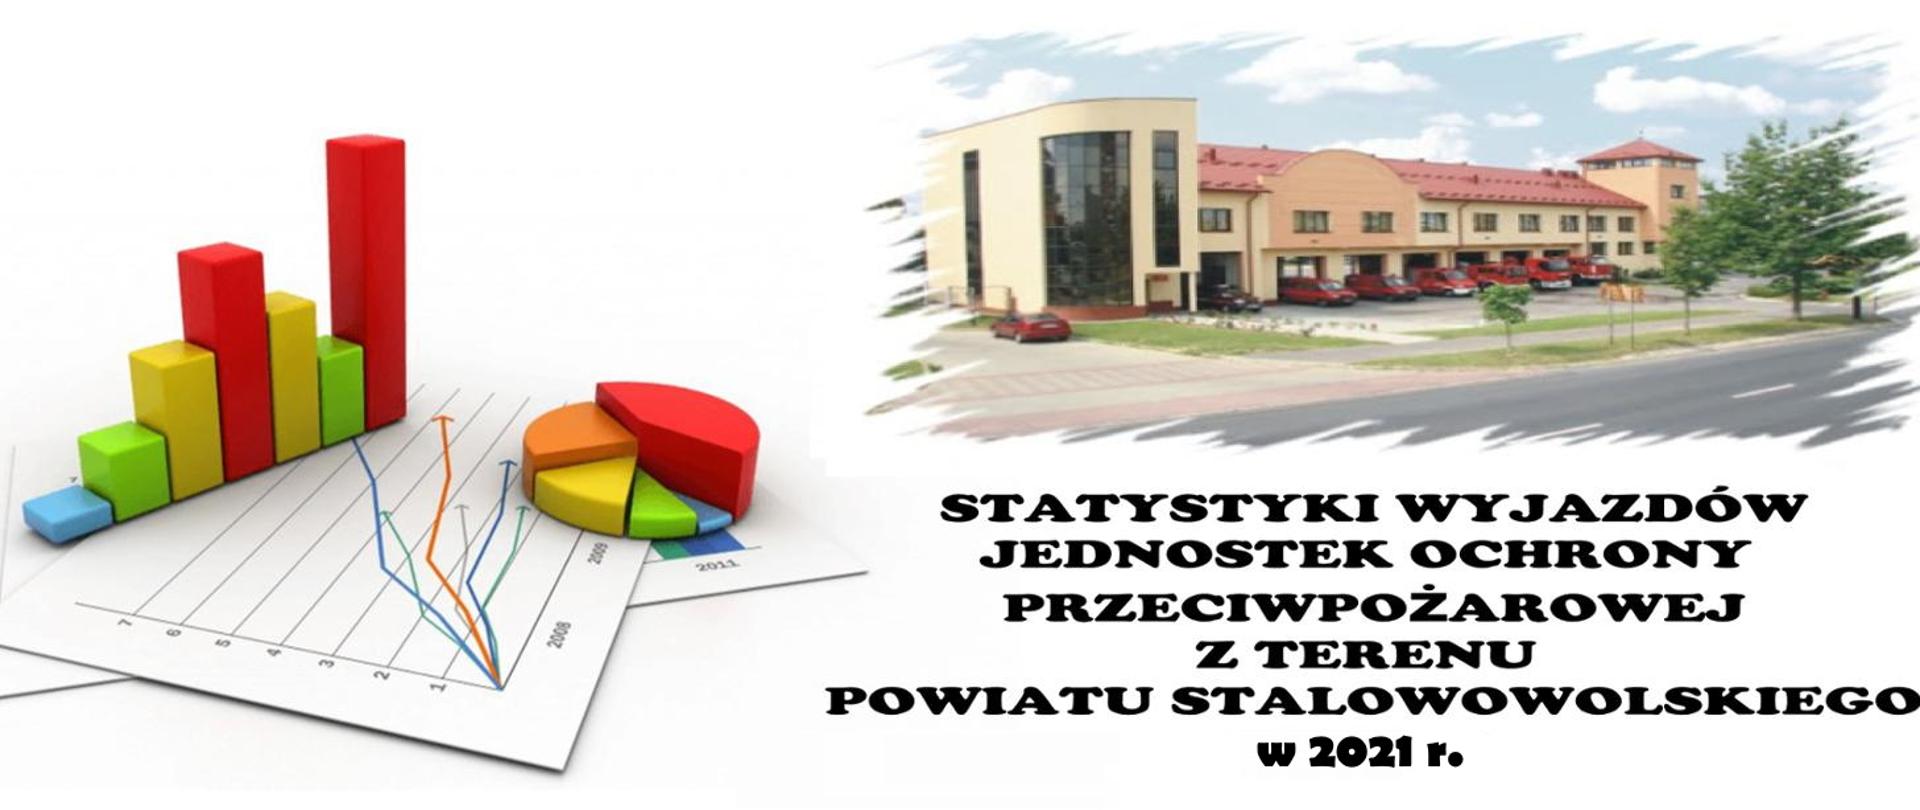 Analiza wyjazdów do zdarzeń JOP z terenu powiatu stalowowolskiego w 2021 r.